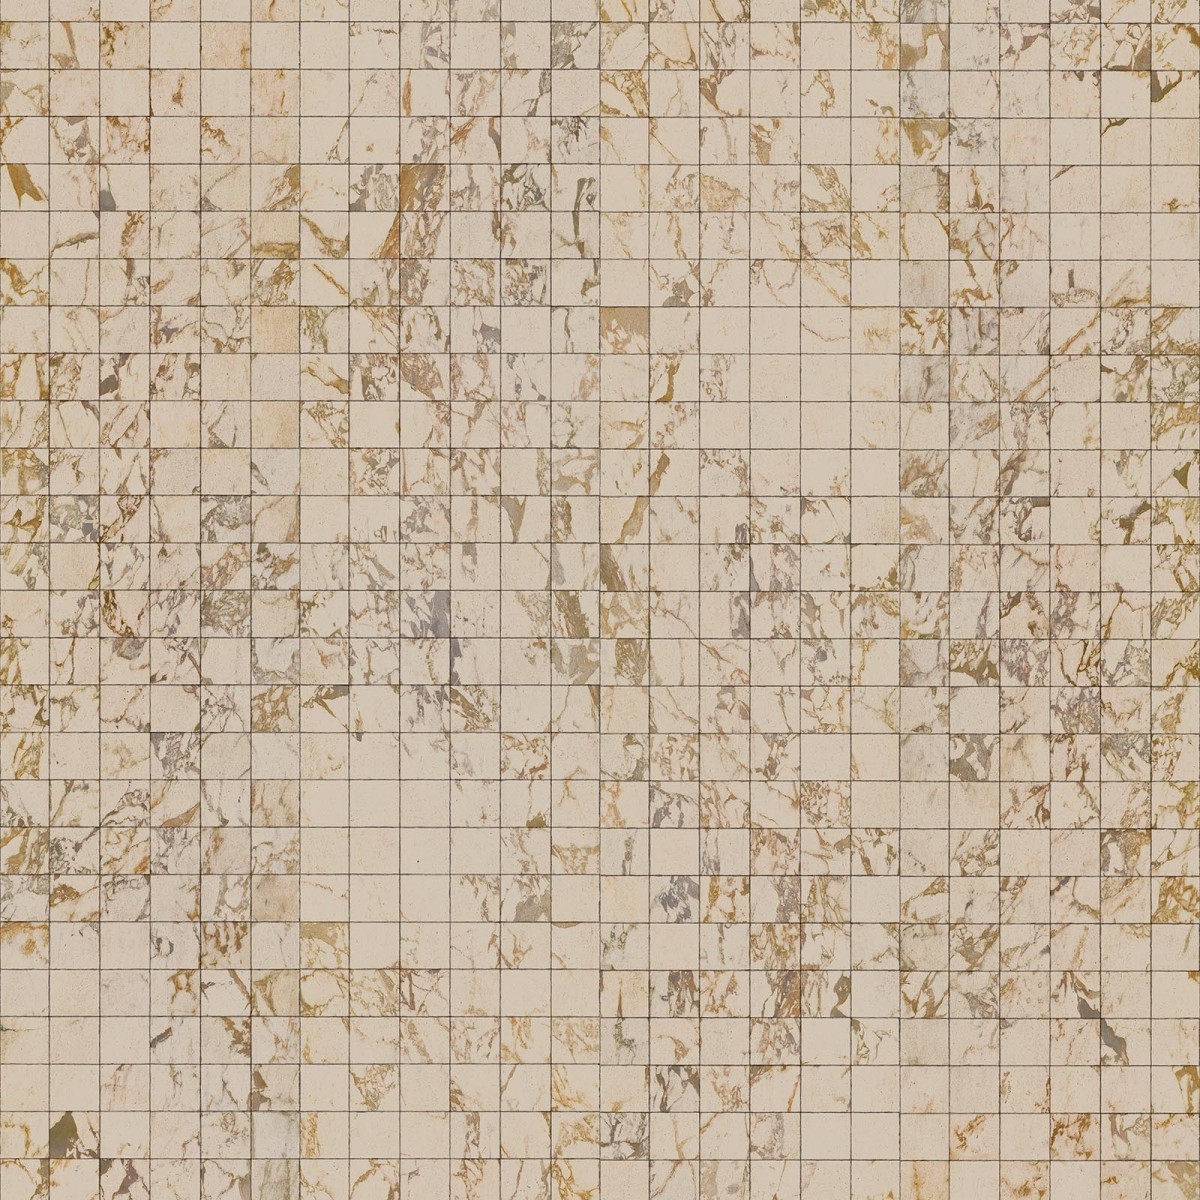 Tapet designer Materials Marble, Tiles 8.1x7.7cm, Beige by Piet Hein Eek, NLXL, 4.9mp / rola, Tapet Exclusivist 